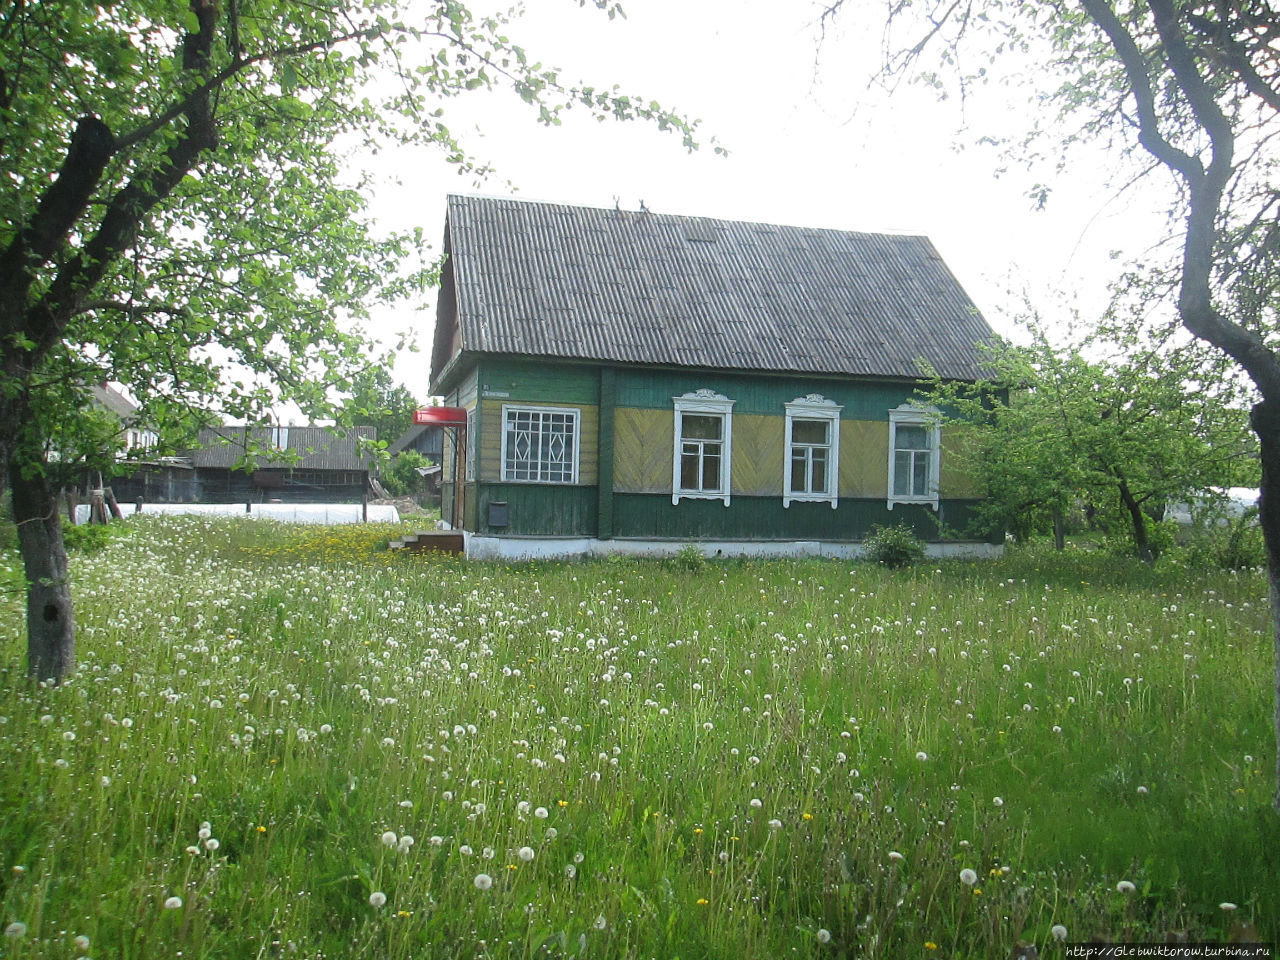 Верхнедвинск — бывший город Дрисса Верхнедвинск, Беларусь